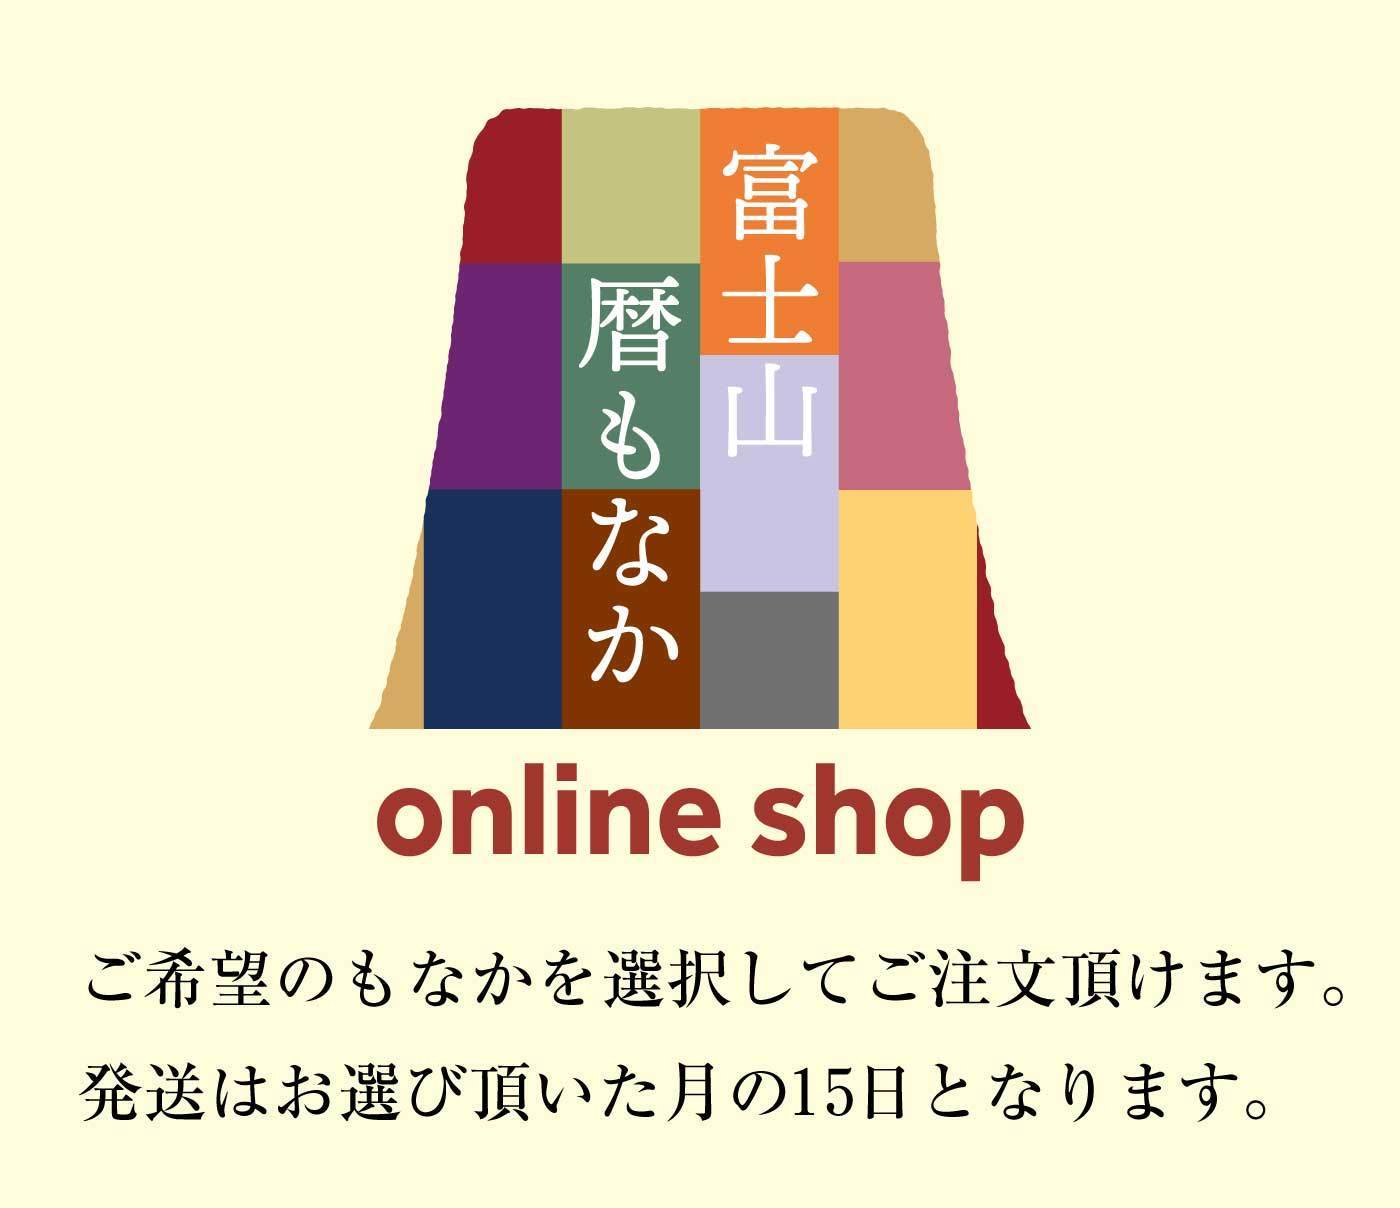 富士山暦もなかonline shopご希望のもなかを選択してご注文頂けます。発送はお選び頂いた月の15日となります。